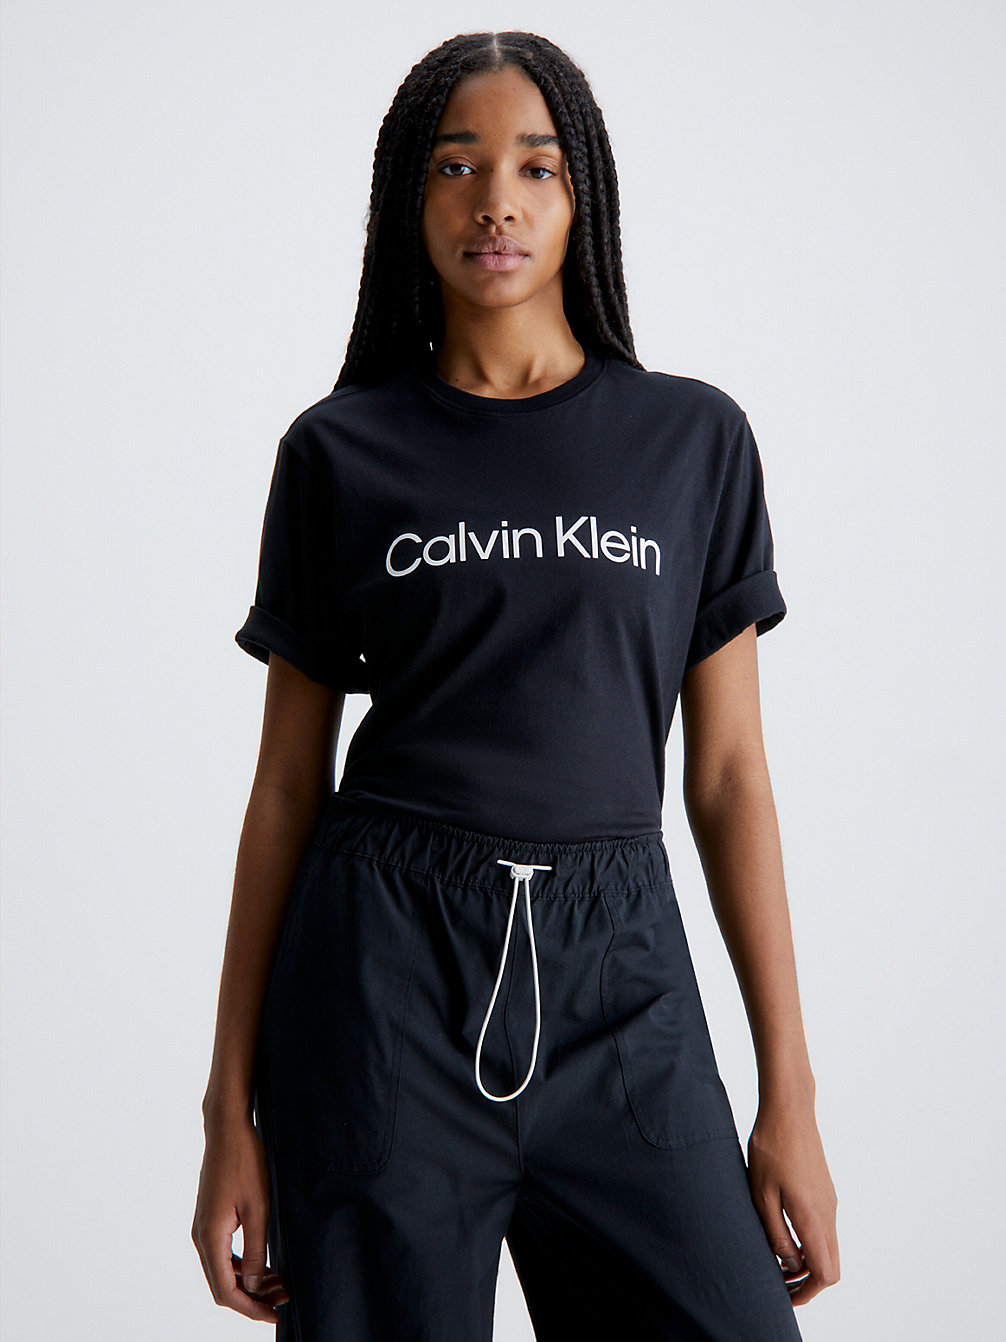 BLACK BEAUTY Weiches Gym-T-Shirt undefined Damen Calvin Klein